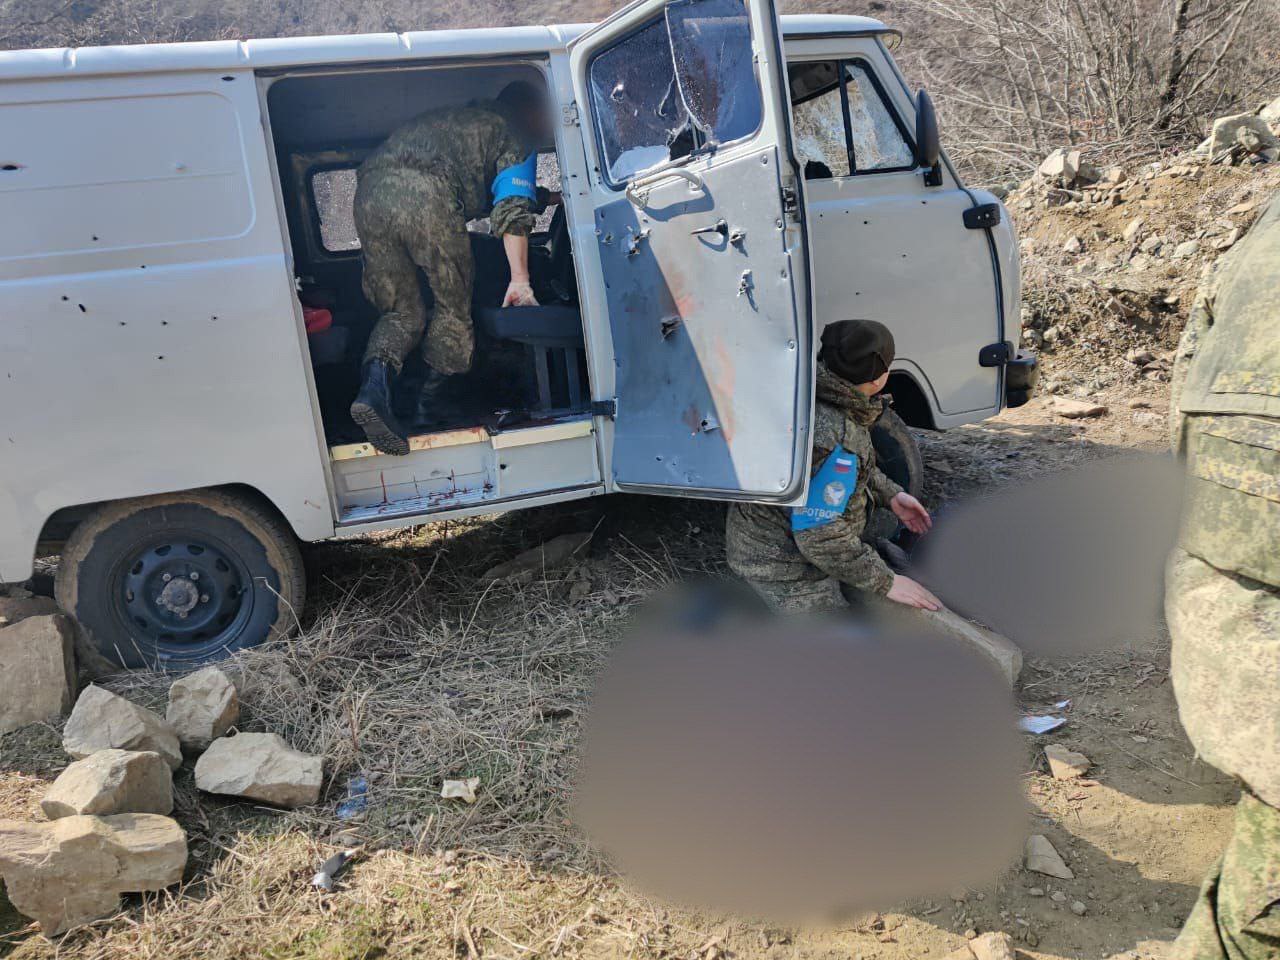 На видео четко видно передвижение азербайджанских военнослужащих и эпизод, как они подходят к машине, открывают дверь, снова стреляют и убегают։ МВД Арцаха